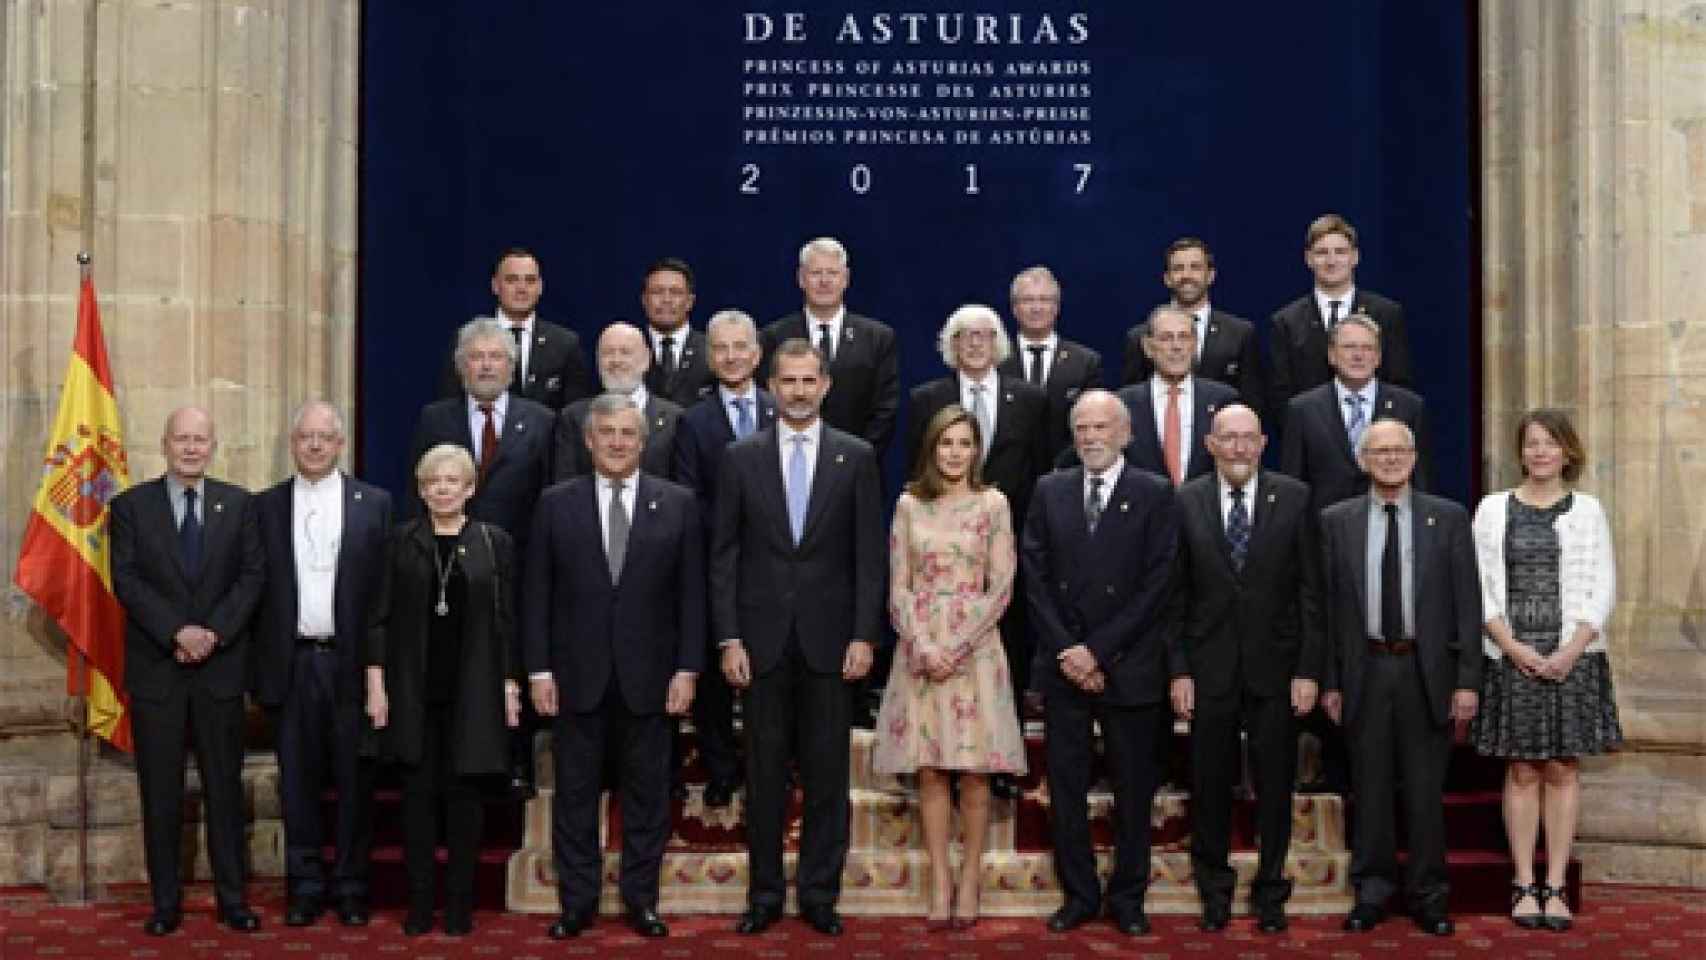 Image: Premios Princesa de Asturias, Derecho y unidad contra la incertidumbre